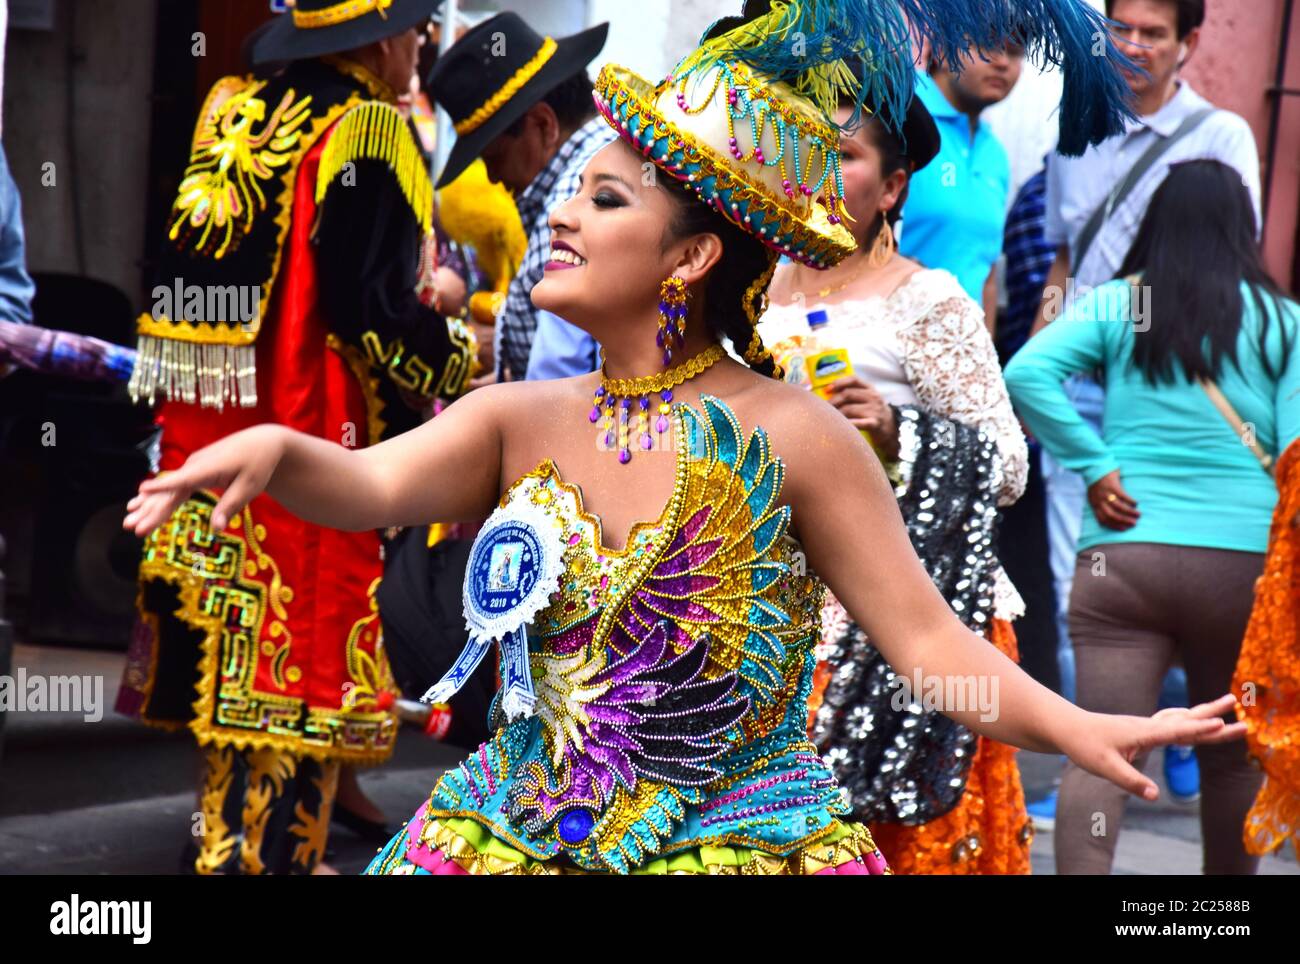 Frauen in traditionellen bunten Kleidern tanzen auf der Straße während der lokalen Feiern in Peru. Stockfoto